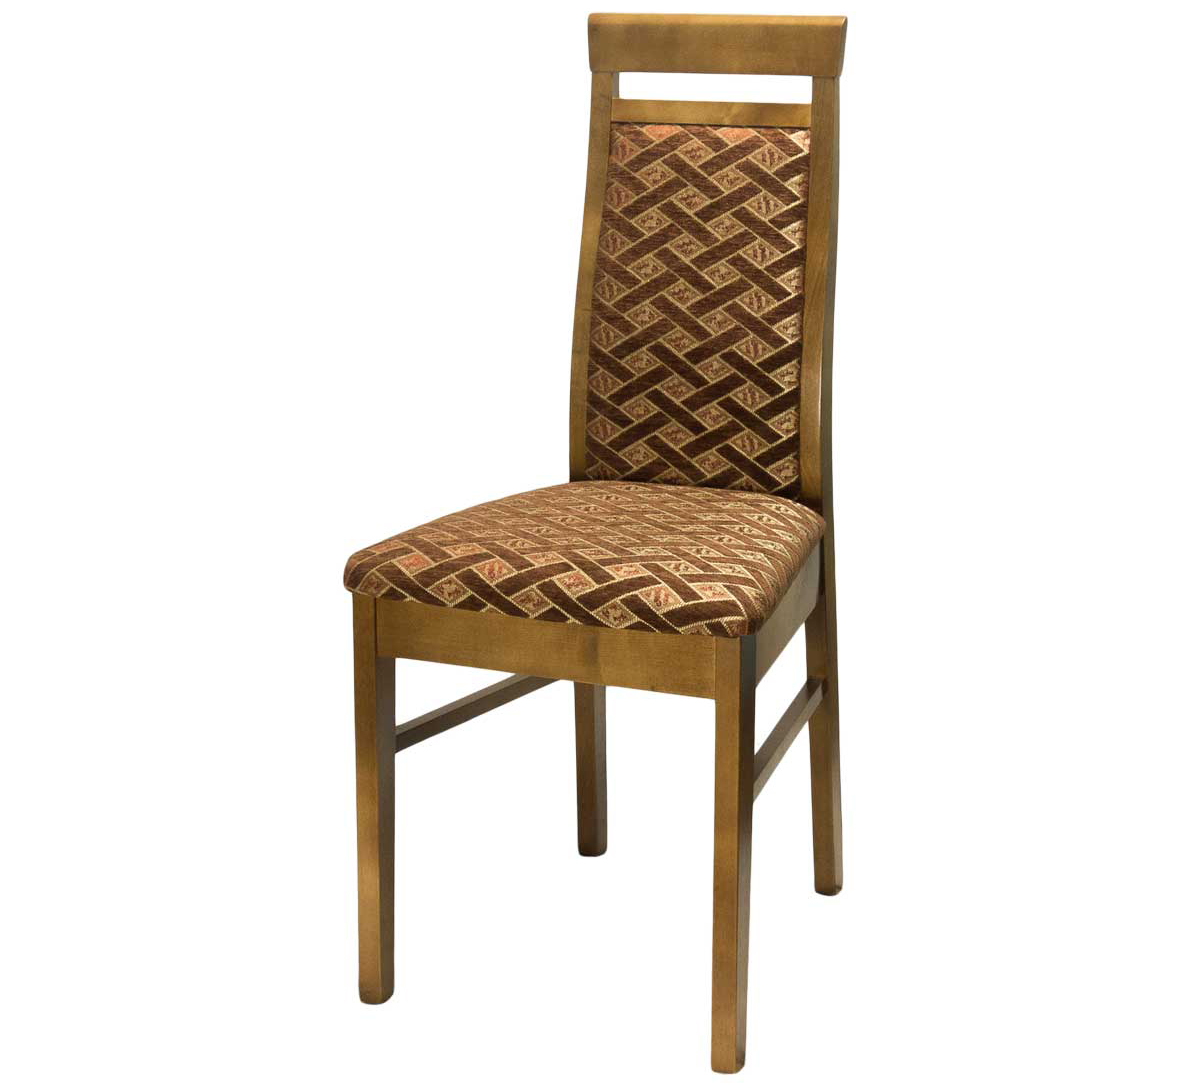 Недорогой деревянный стул для кухни (арт. М3207)